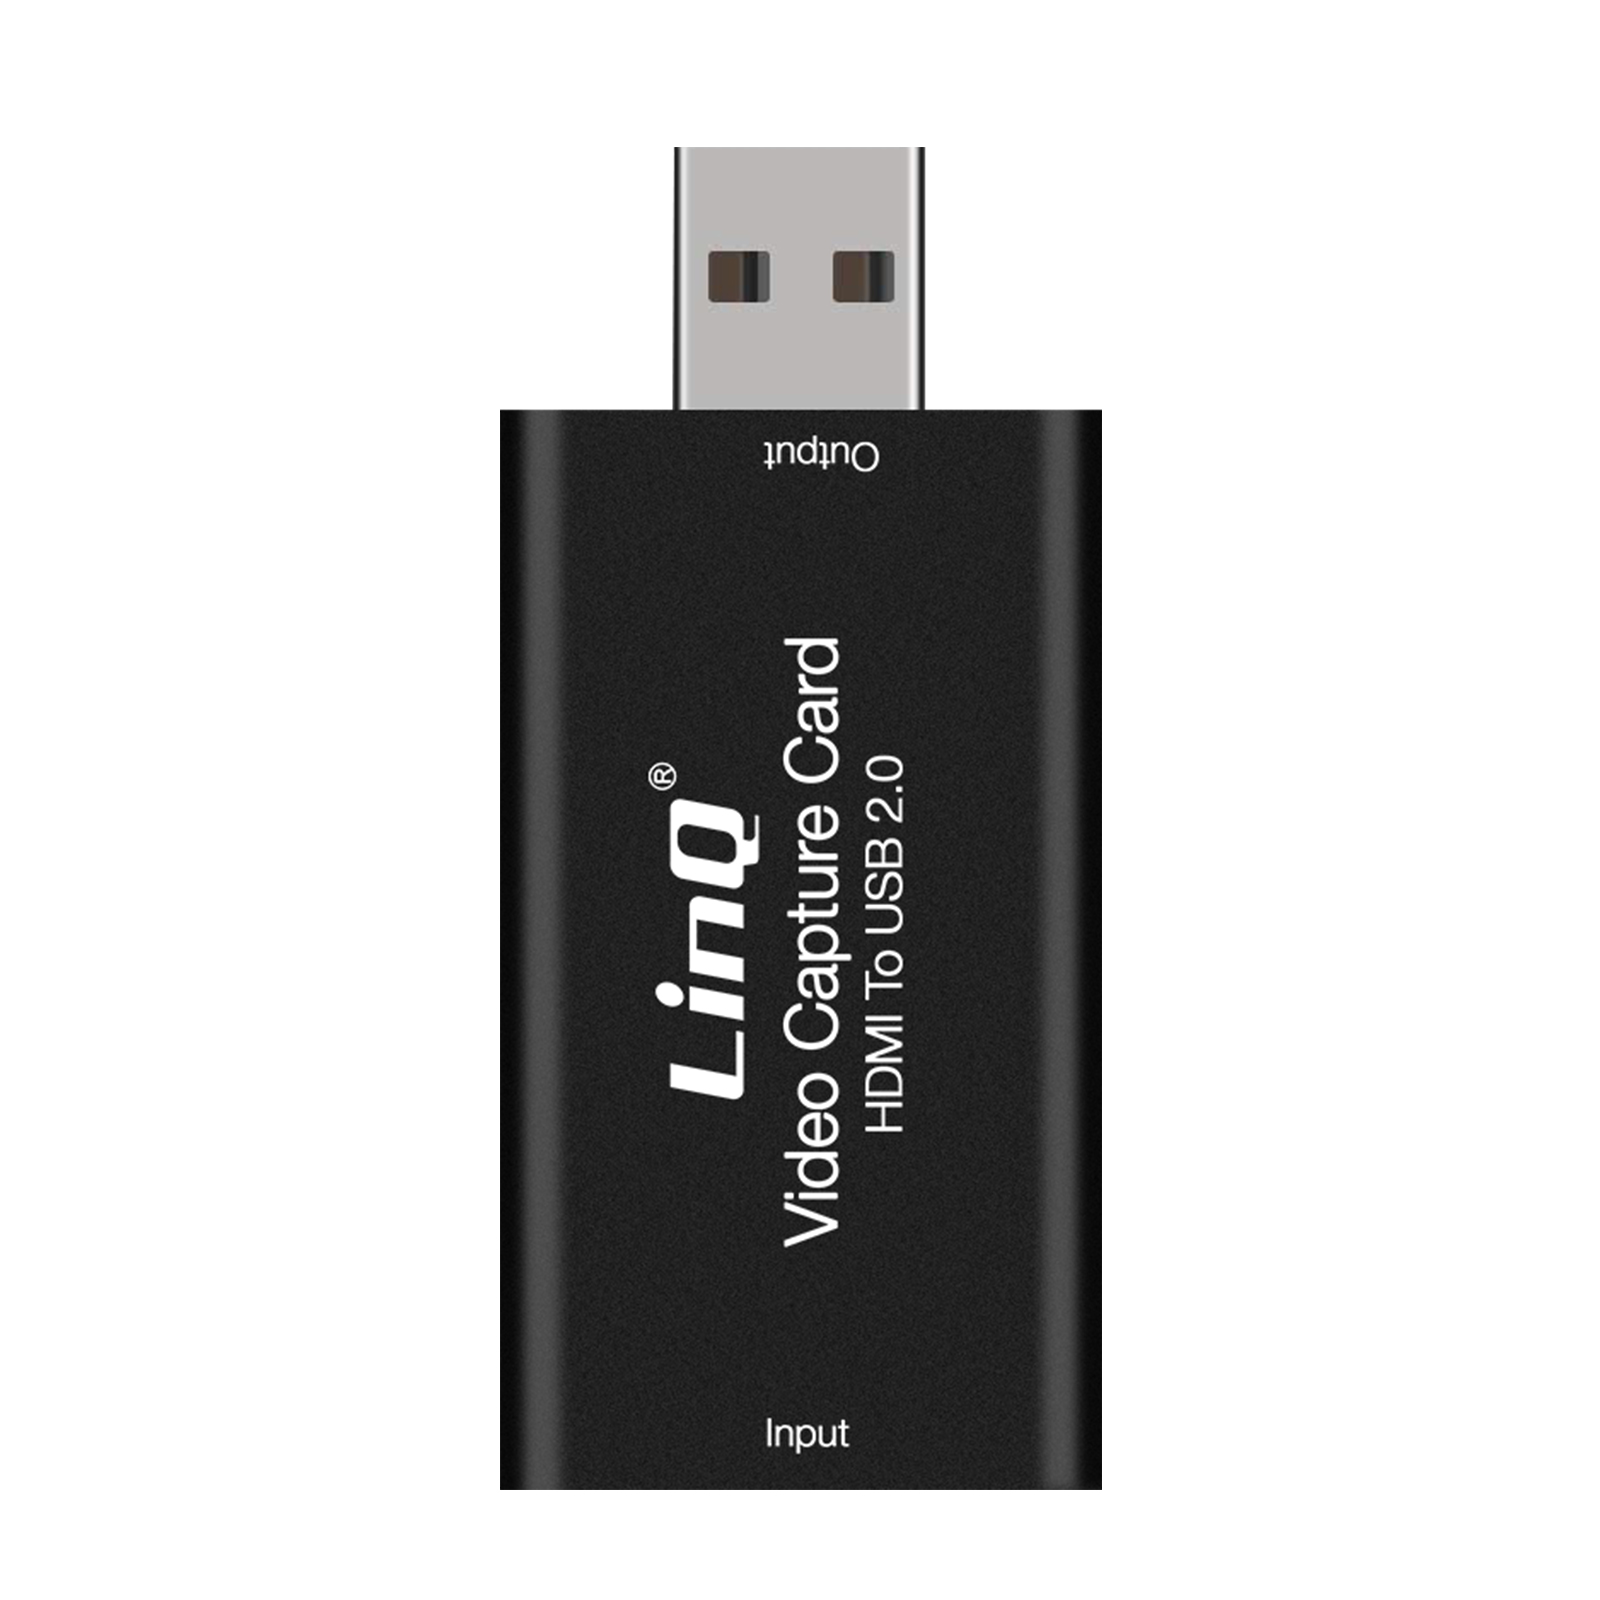 HDMI LINQ Universal, Schwarz zu Videoaufnahmekarte USB Videoaufnahmekarten